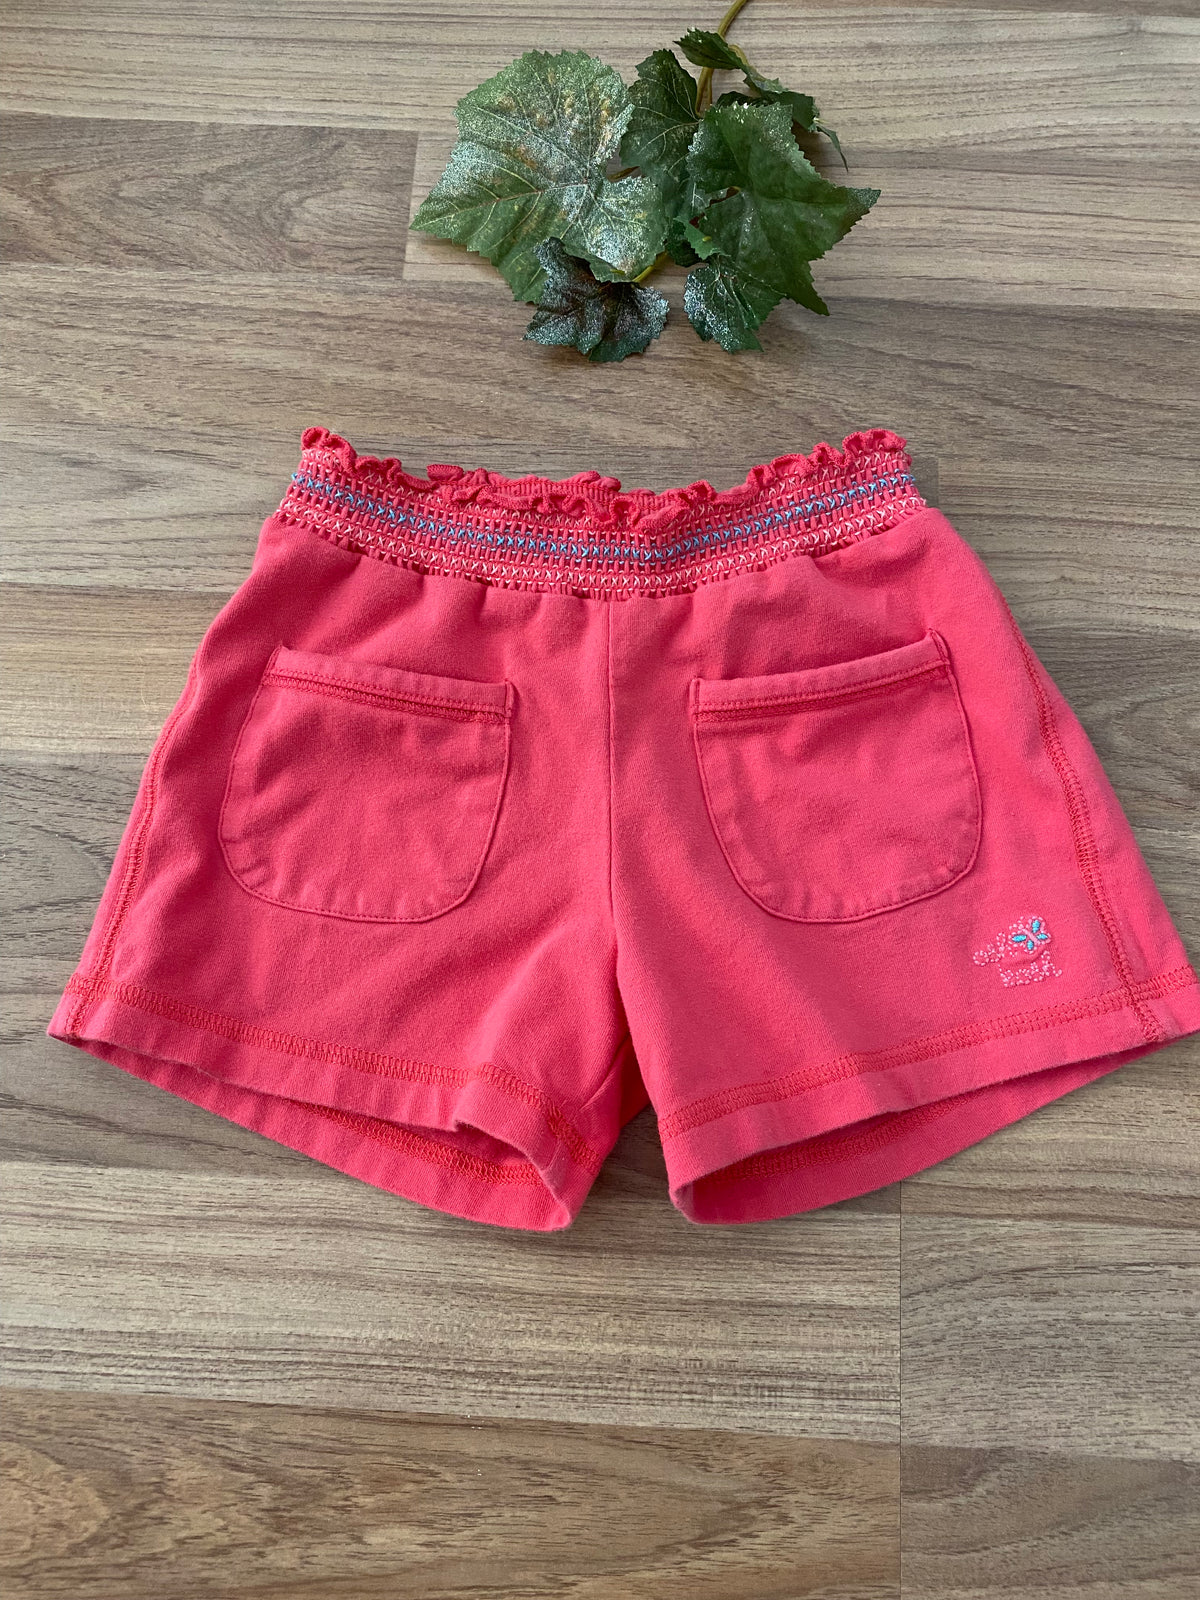 Shorts (Girls Size 5)